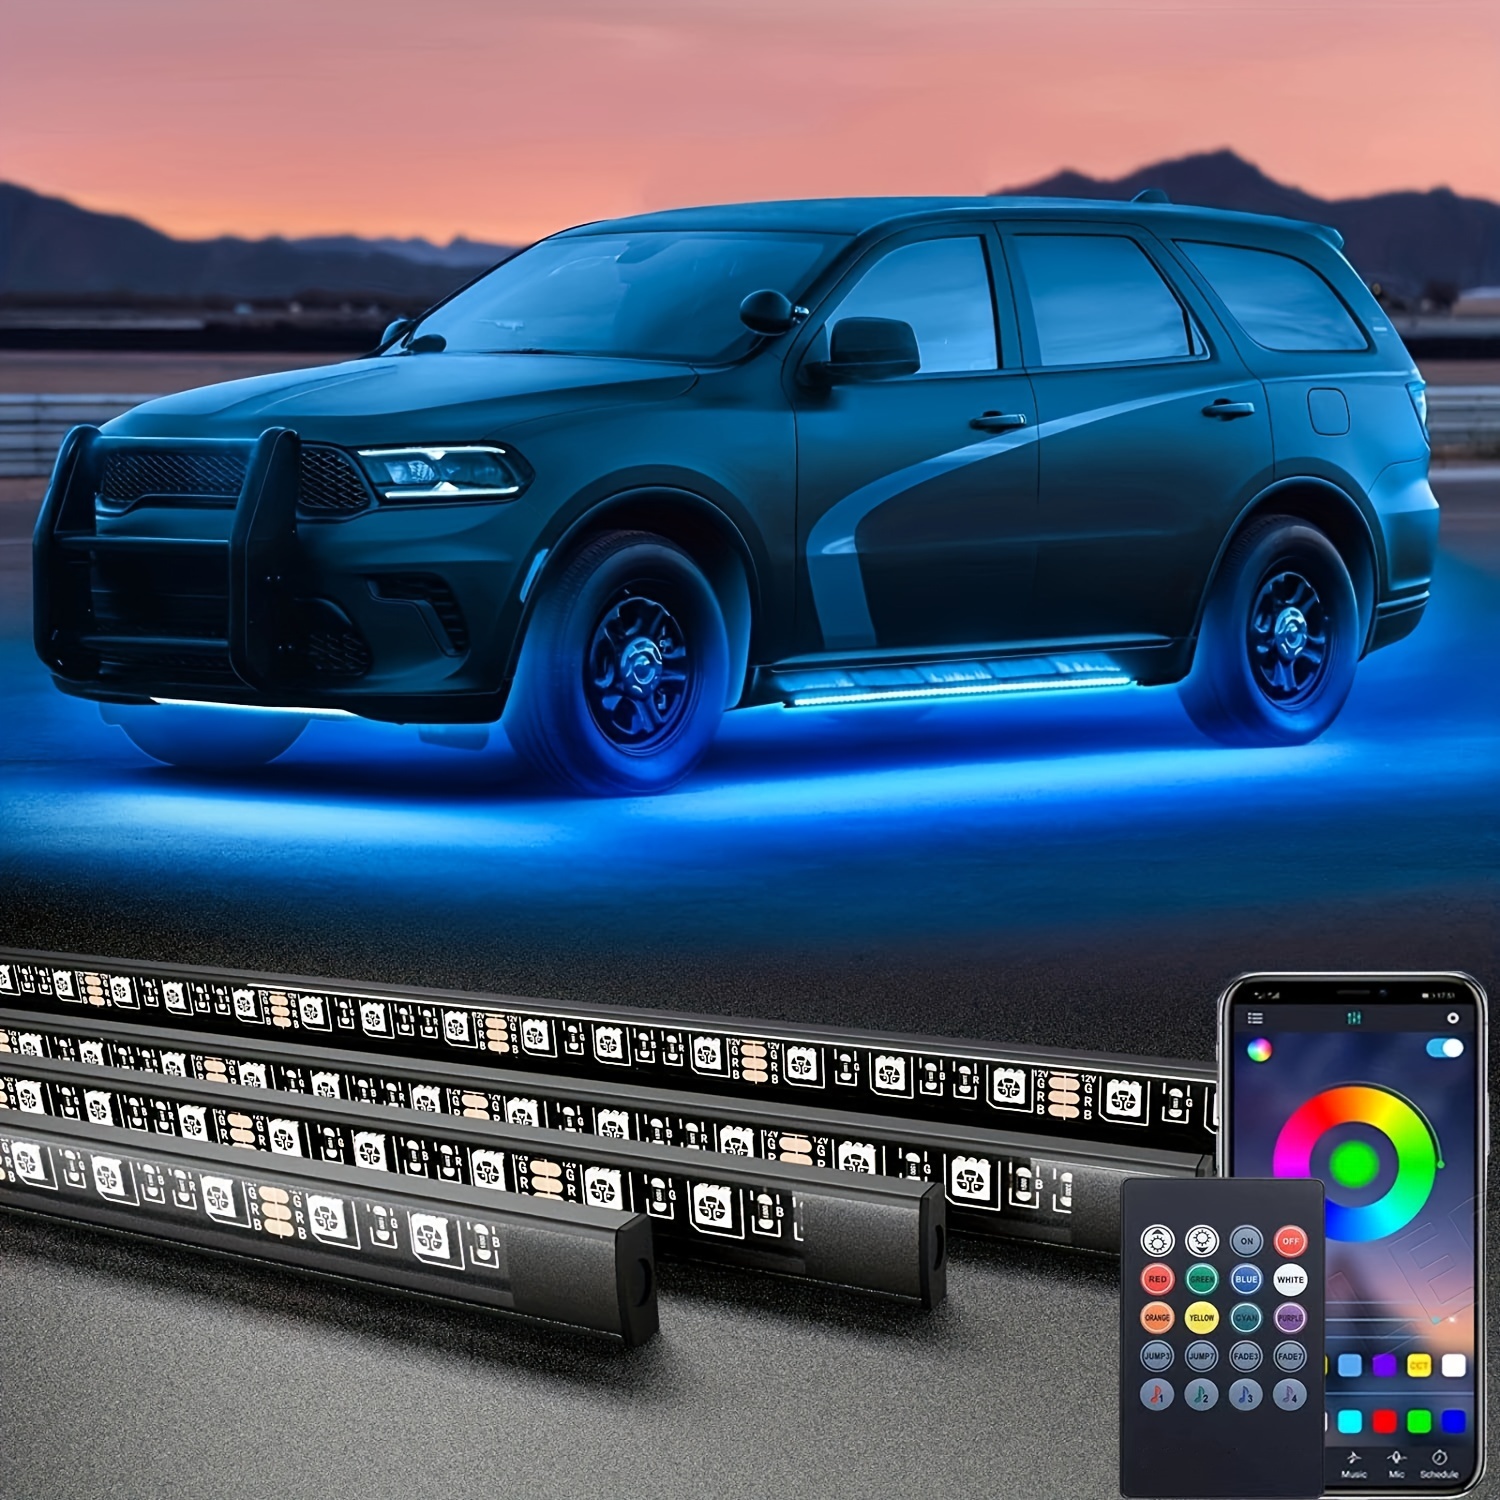 Luce LED multicolore accessori auto luci atmosferiche lampada con kit  telecomand